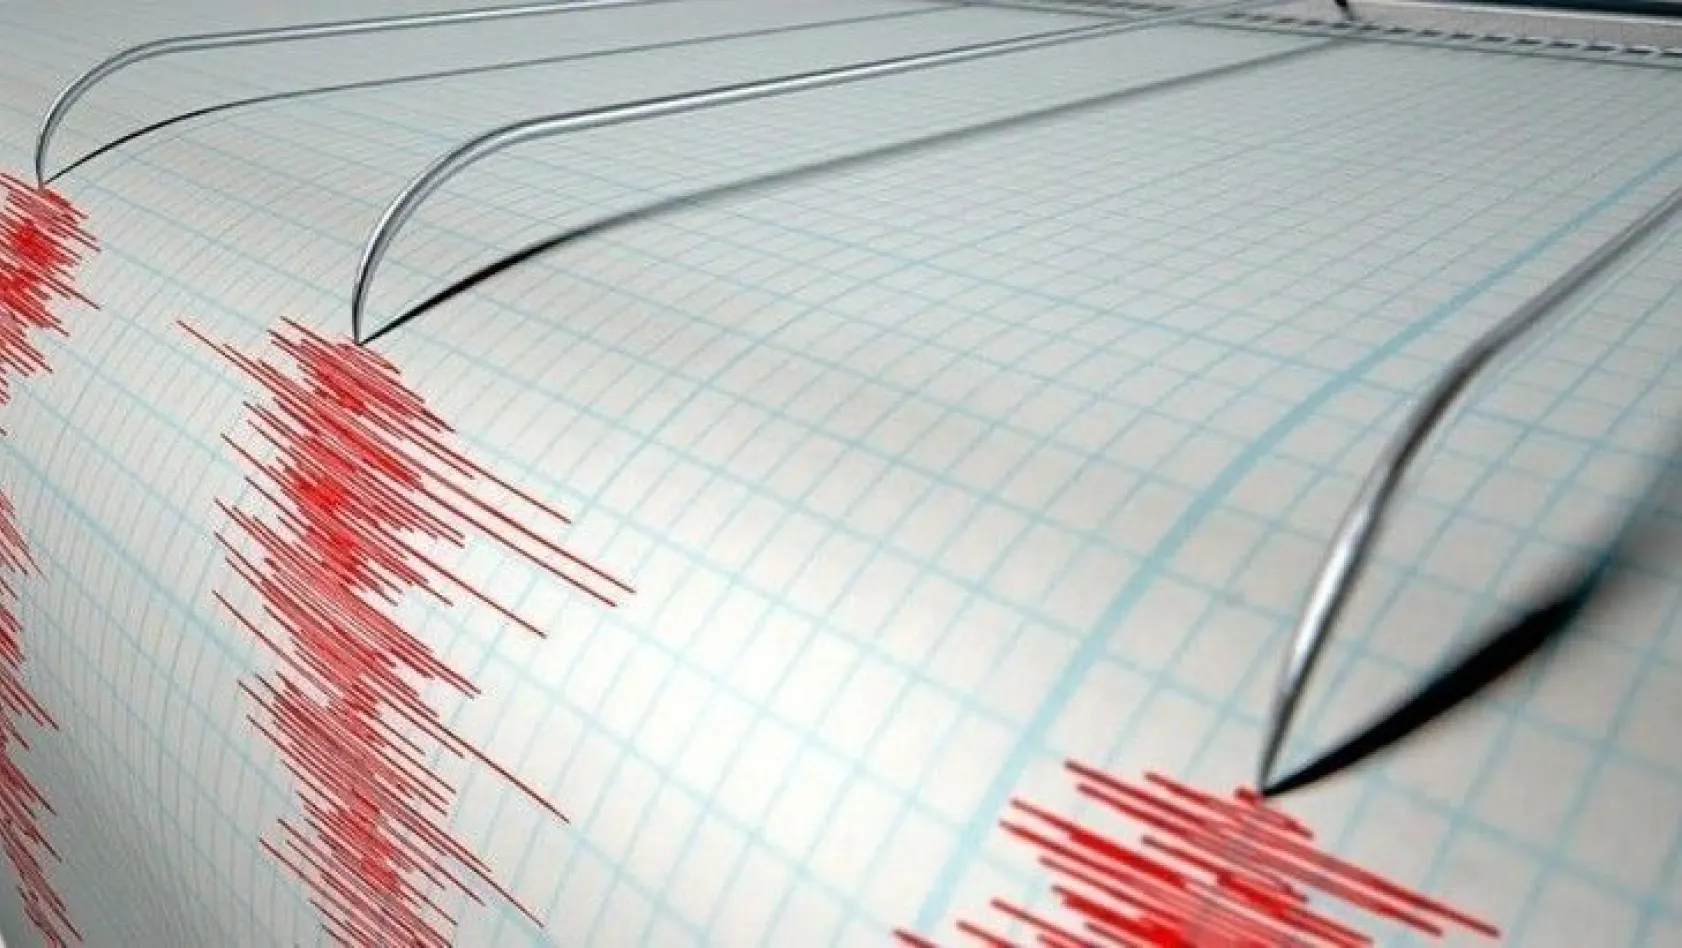 Endonezya'da 7.3 büyüklüğünde deprem